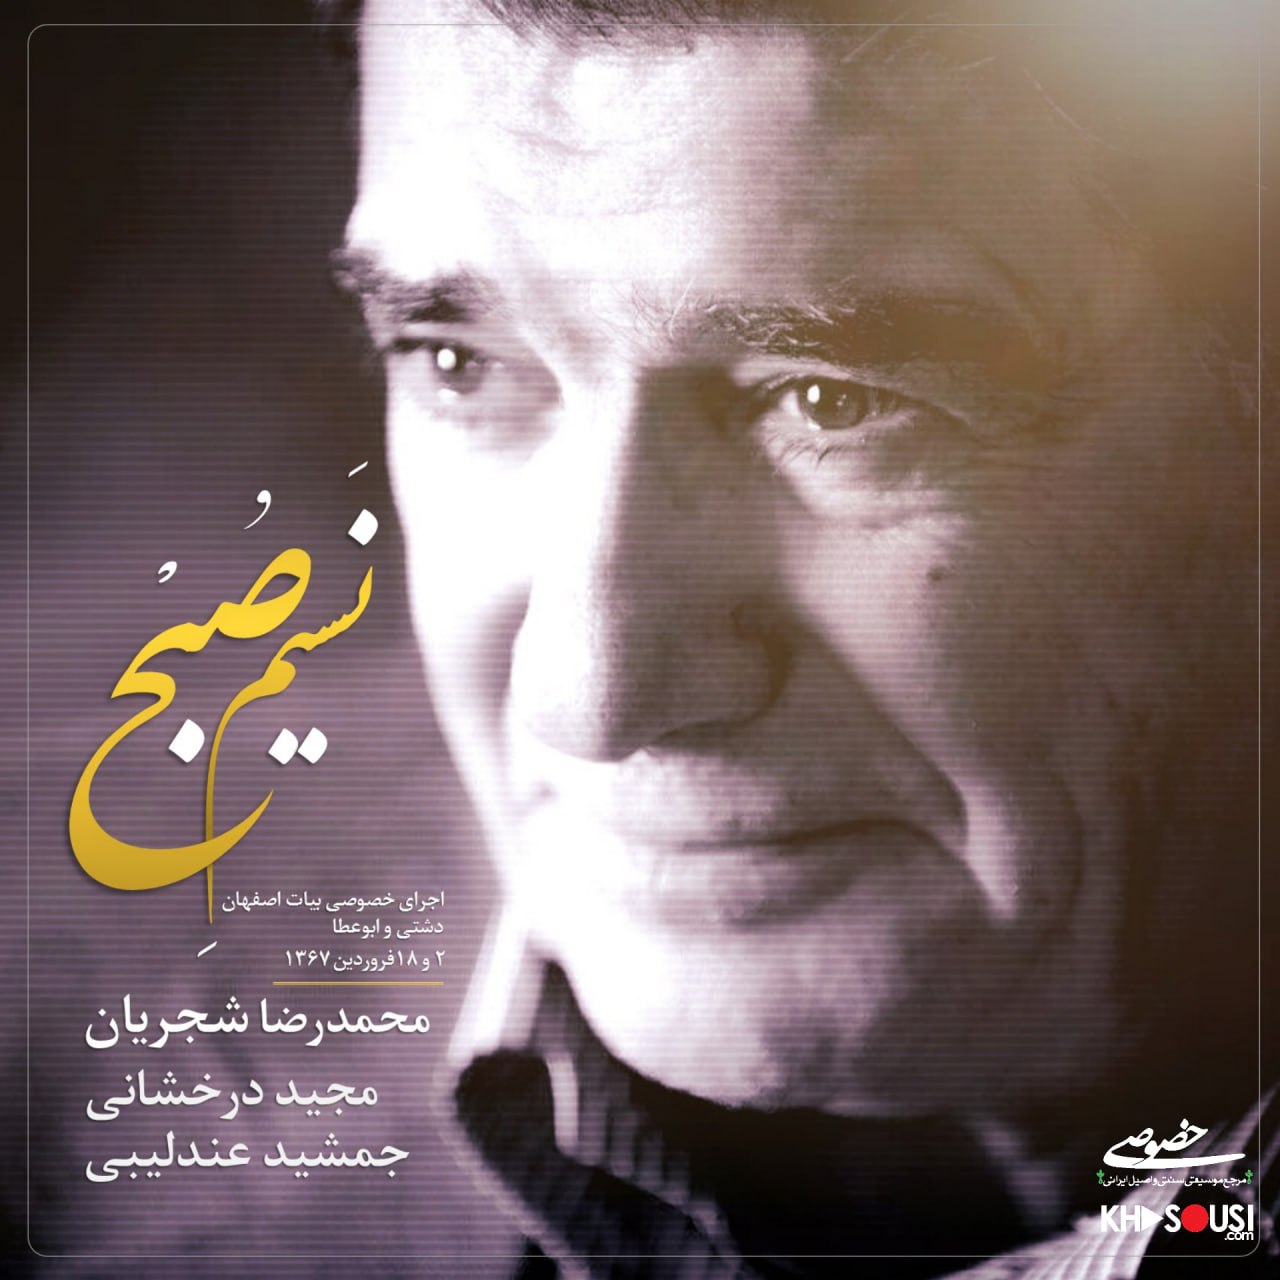 نسیم صبح - دو اجرای خصوصی محمدرضا شجریان، مجید درخشانی و جمشید عندلیبی